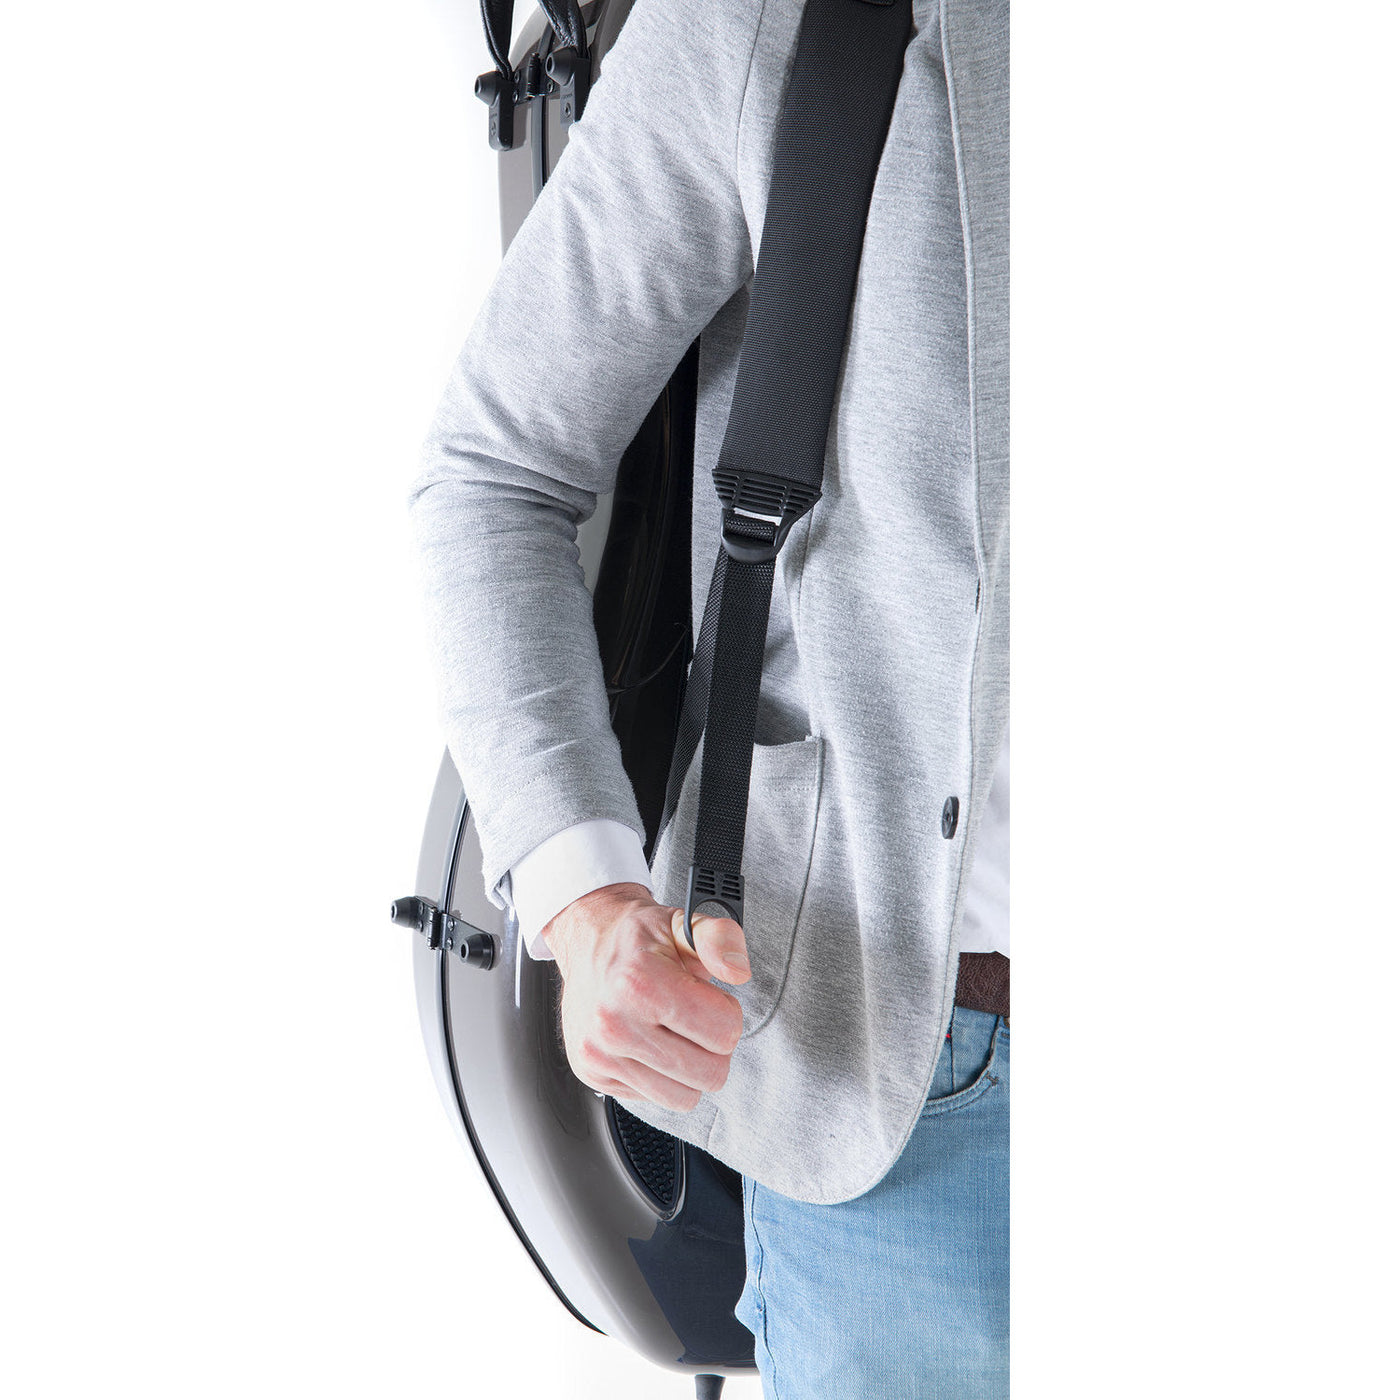 AUF ANFRAGE BESTELLBAR: Cello Rucksack-Tragesystem für Gewa Air